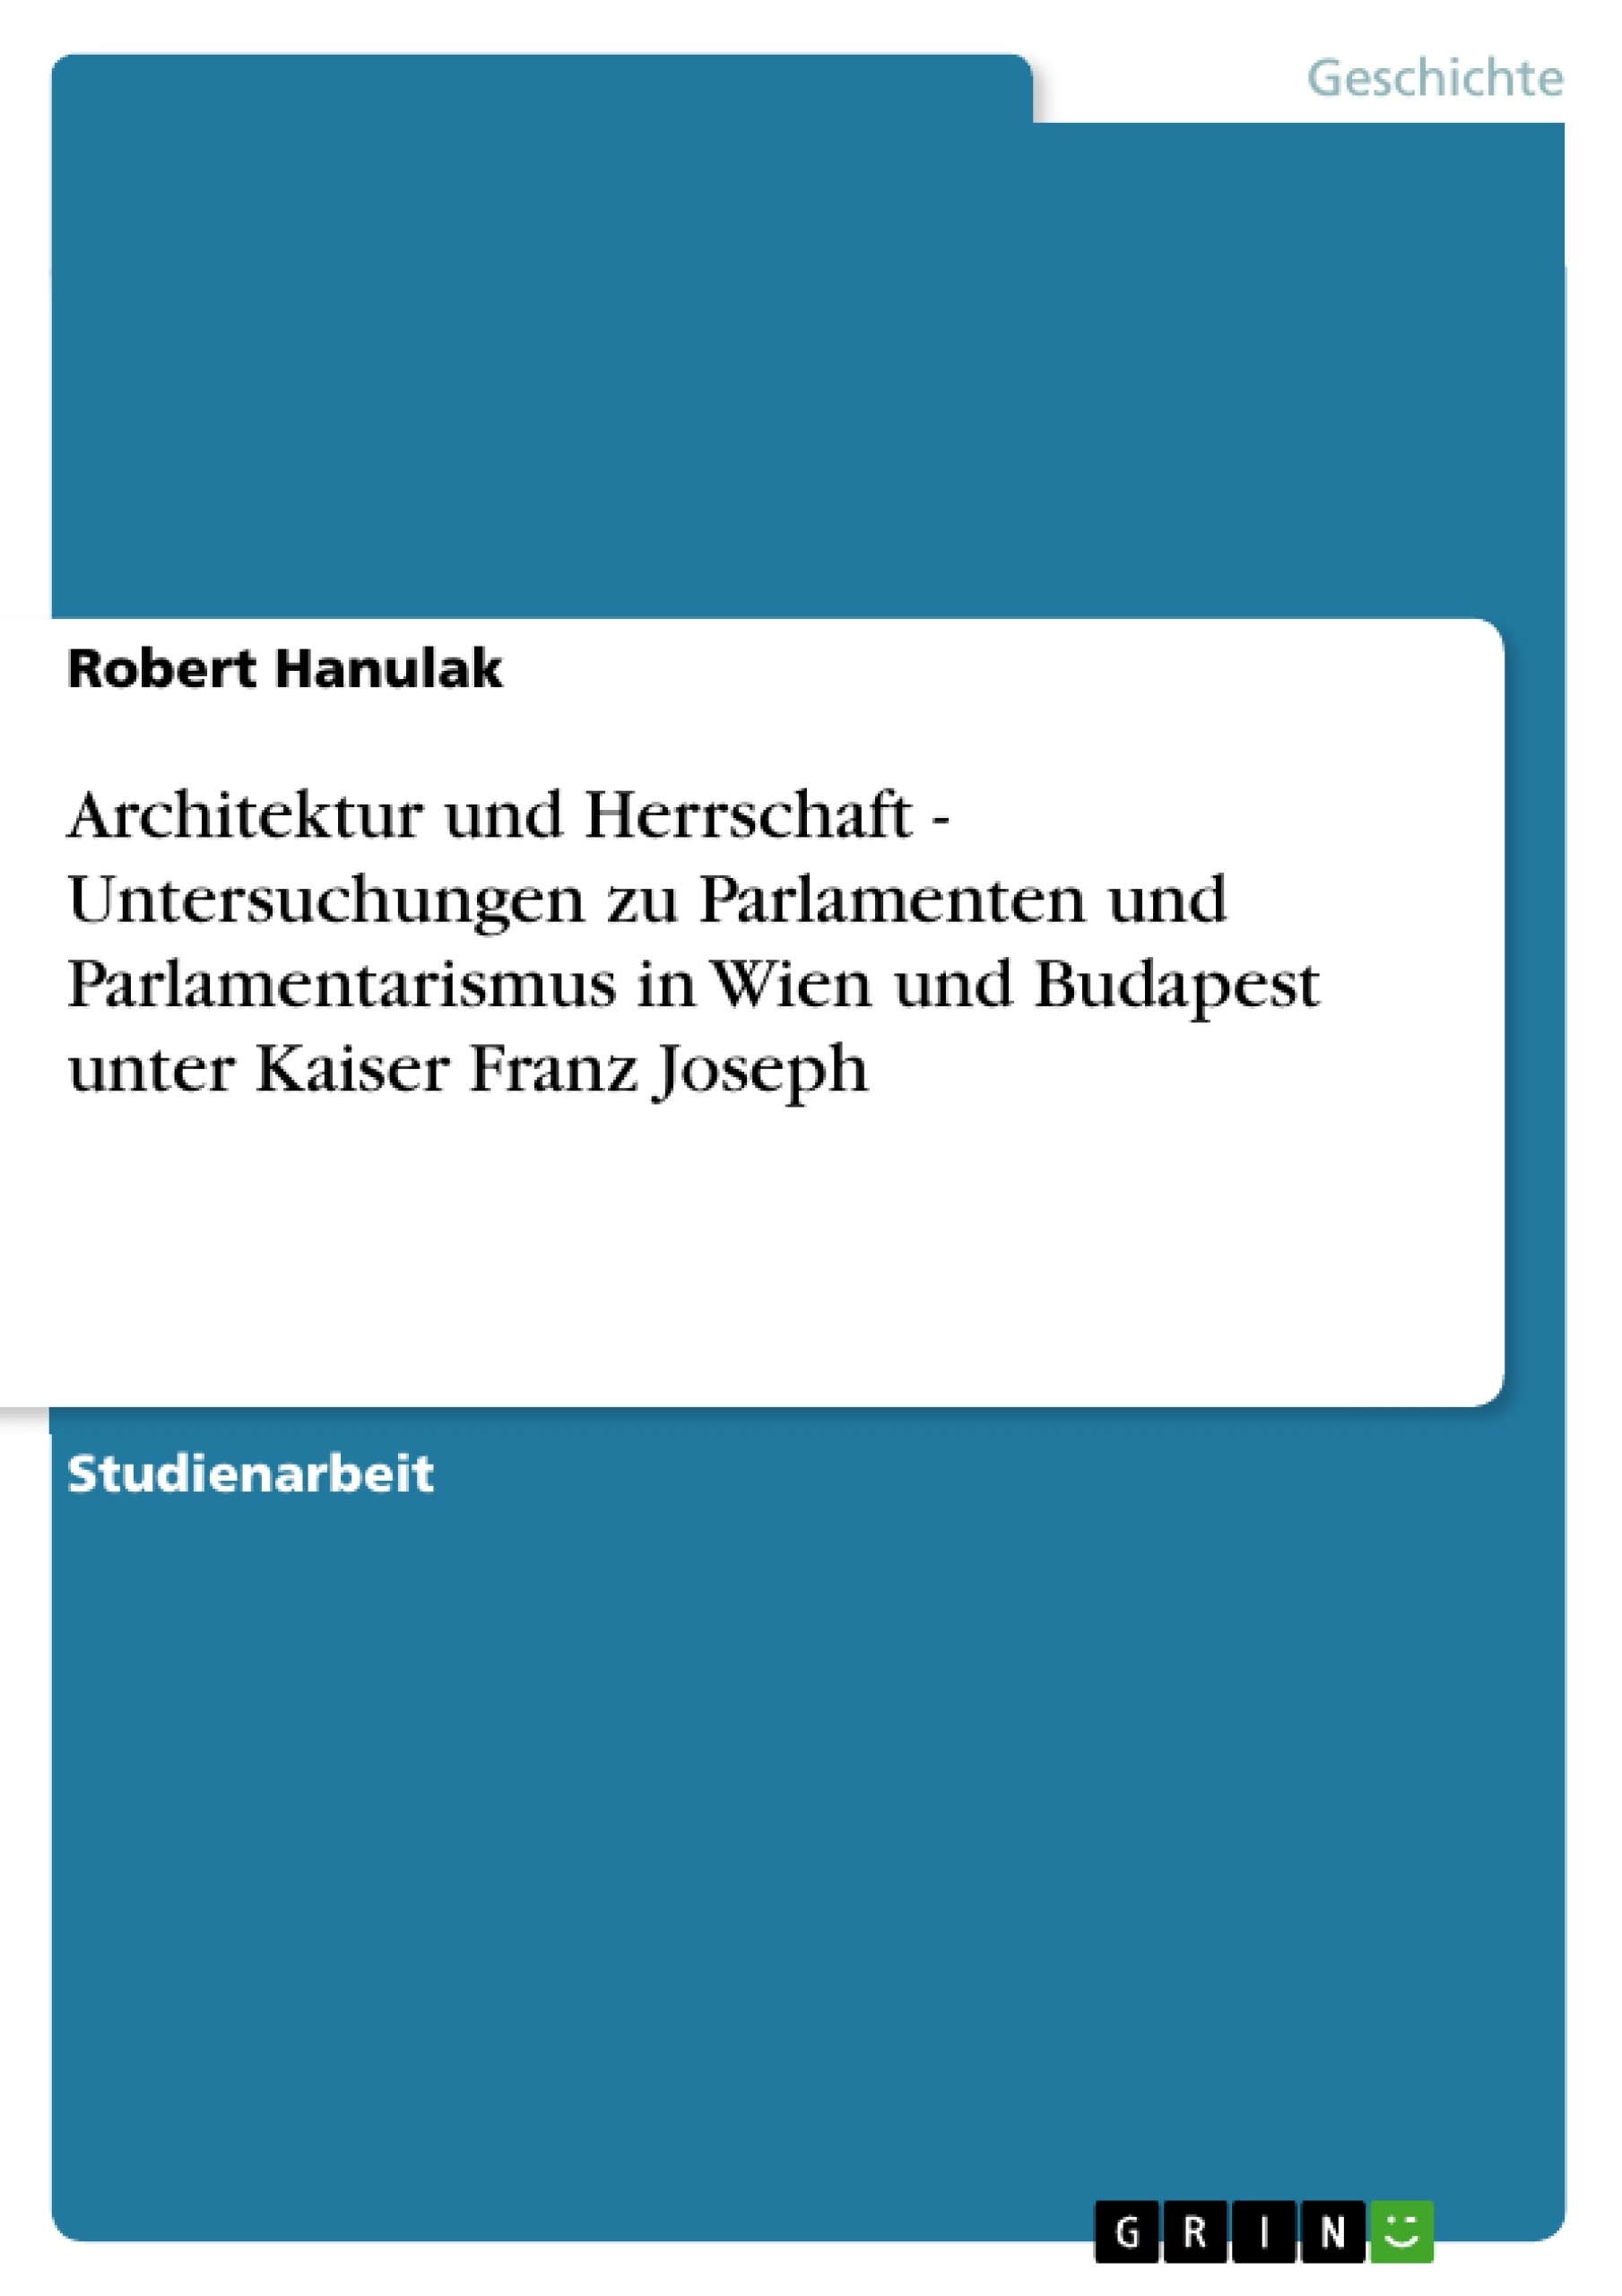 Título: Architektur und Herrschaft - Untersuchungen zu Parlamenten und Parlamentarismus in Wien und Budapest unter Kaiser Franz Joseph